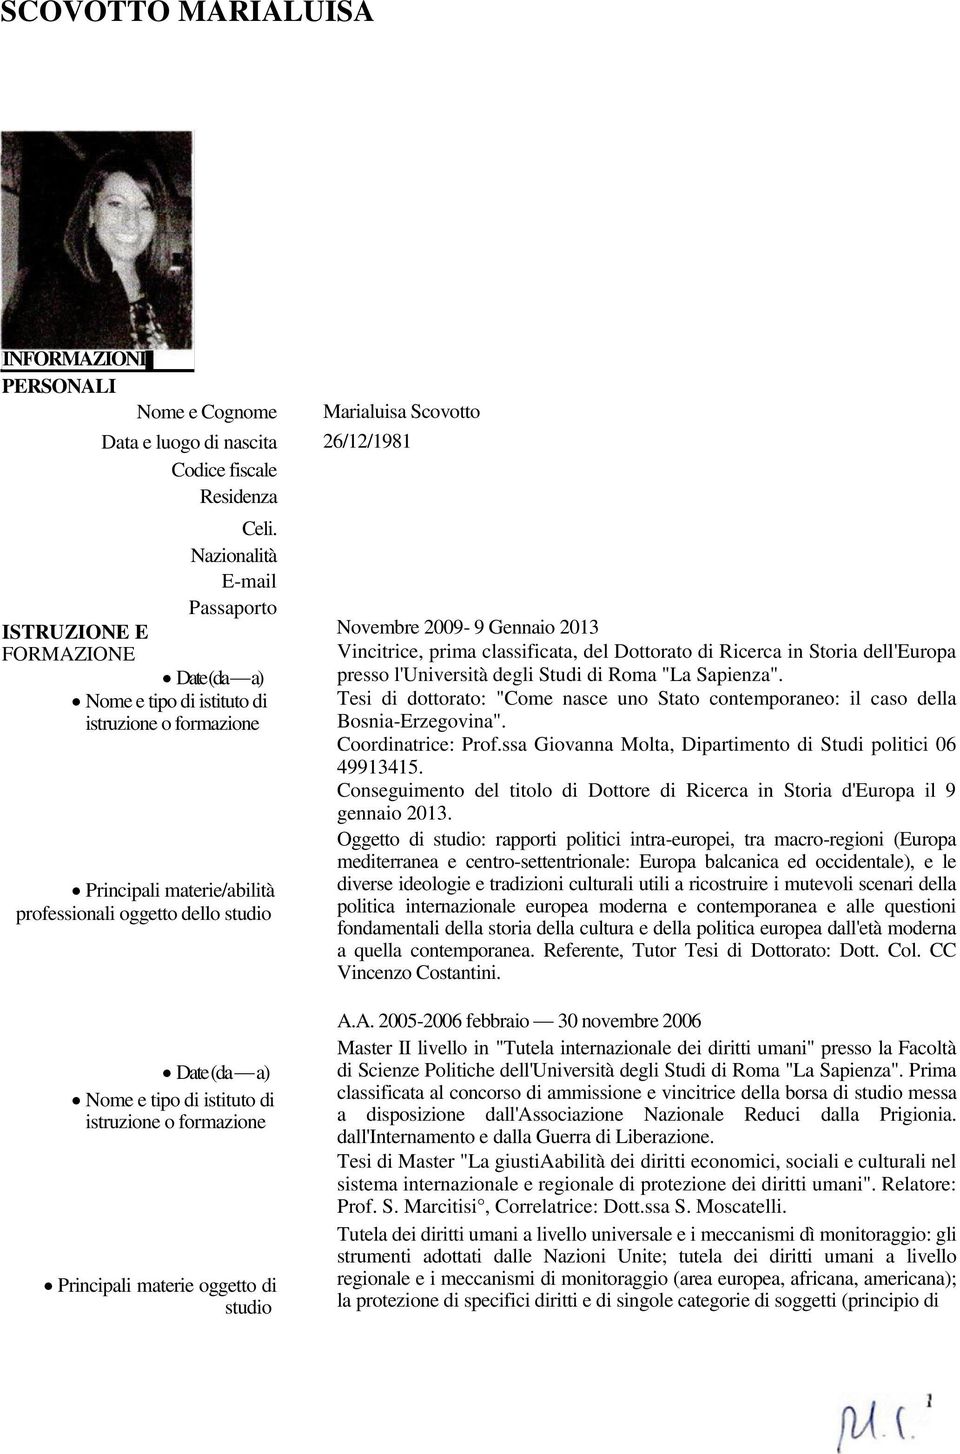 studio Marialuisa Scovotto 26/12/1981 Novembre 2009-9 Gennaio 2013 Vincitrice, prima classificata, del Dottorato di Ricerca in Storia dell'europa presso l'università degli Studi di Roma "La Sapienza".